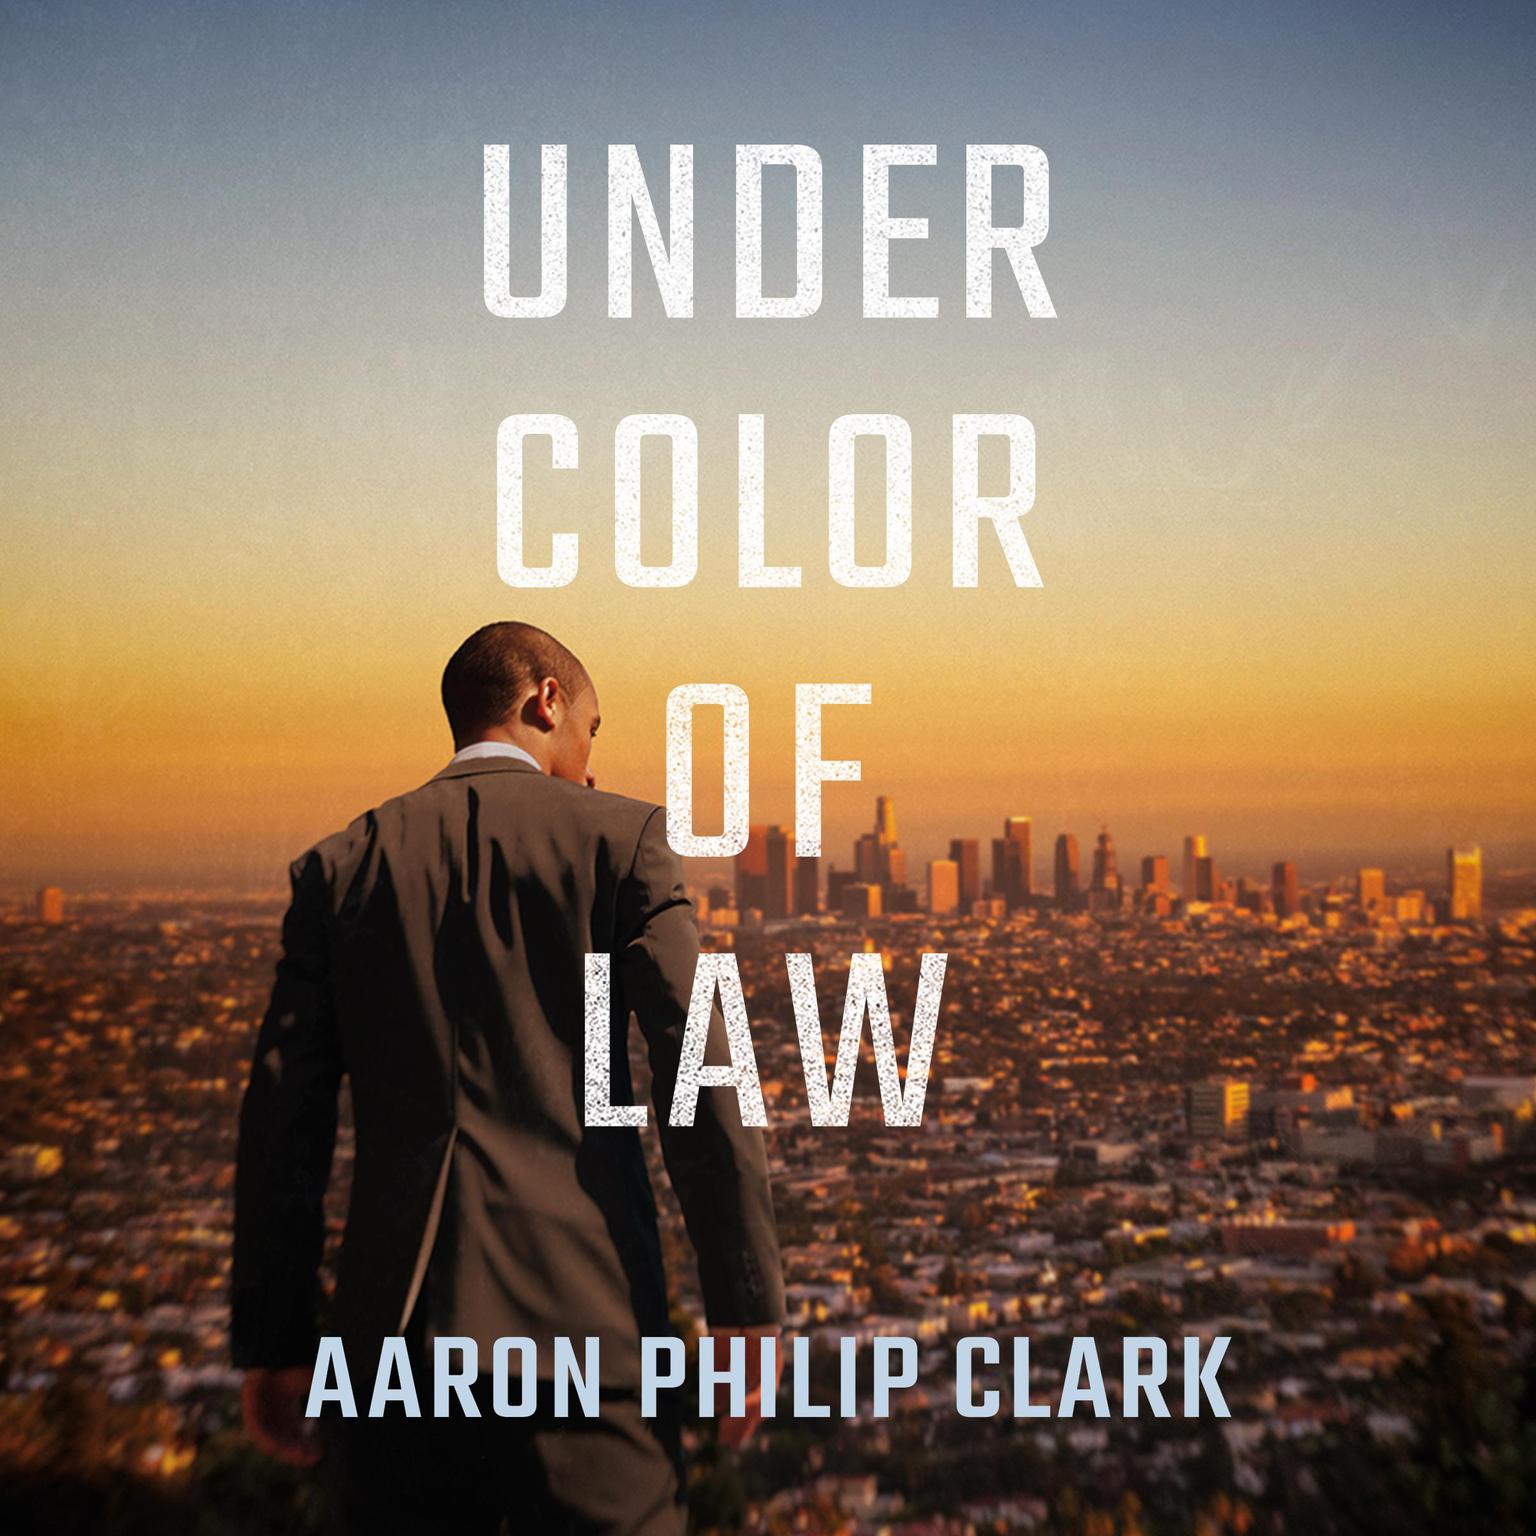 Under Color of Law Audiobook, by Aaron Philip Clark